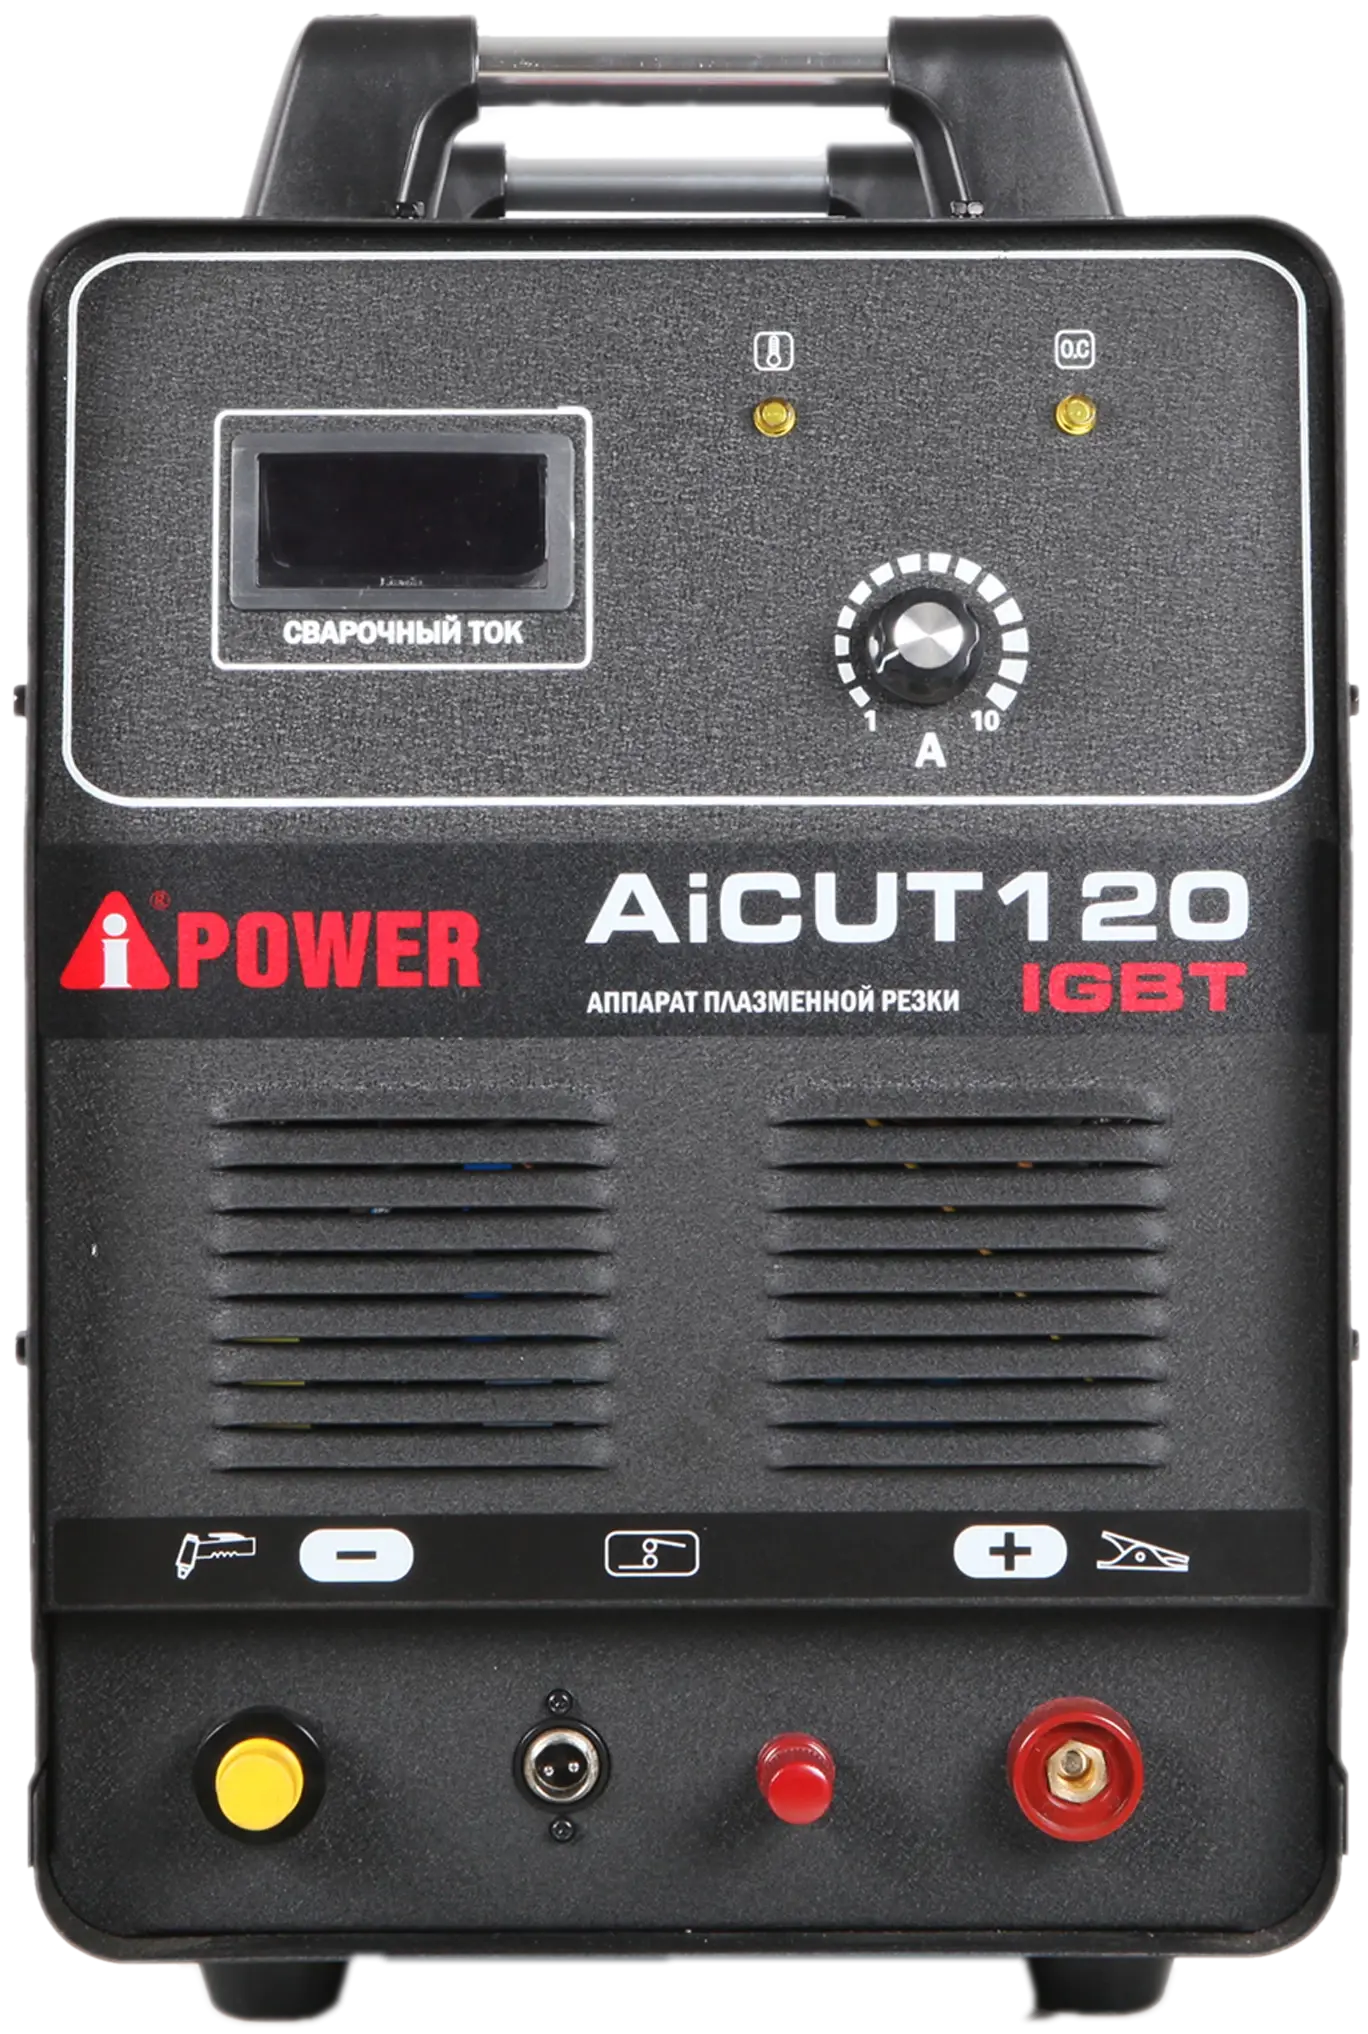 Аппарат плазменной резки A-IPOWER AICUT120 Гарантия 4 года Официальный магазин